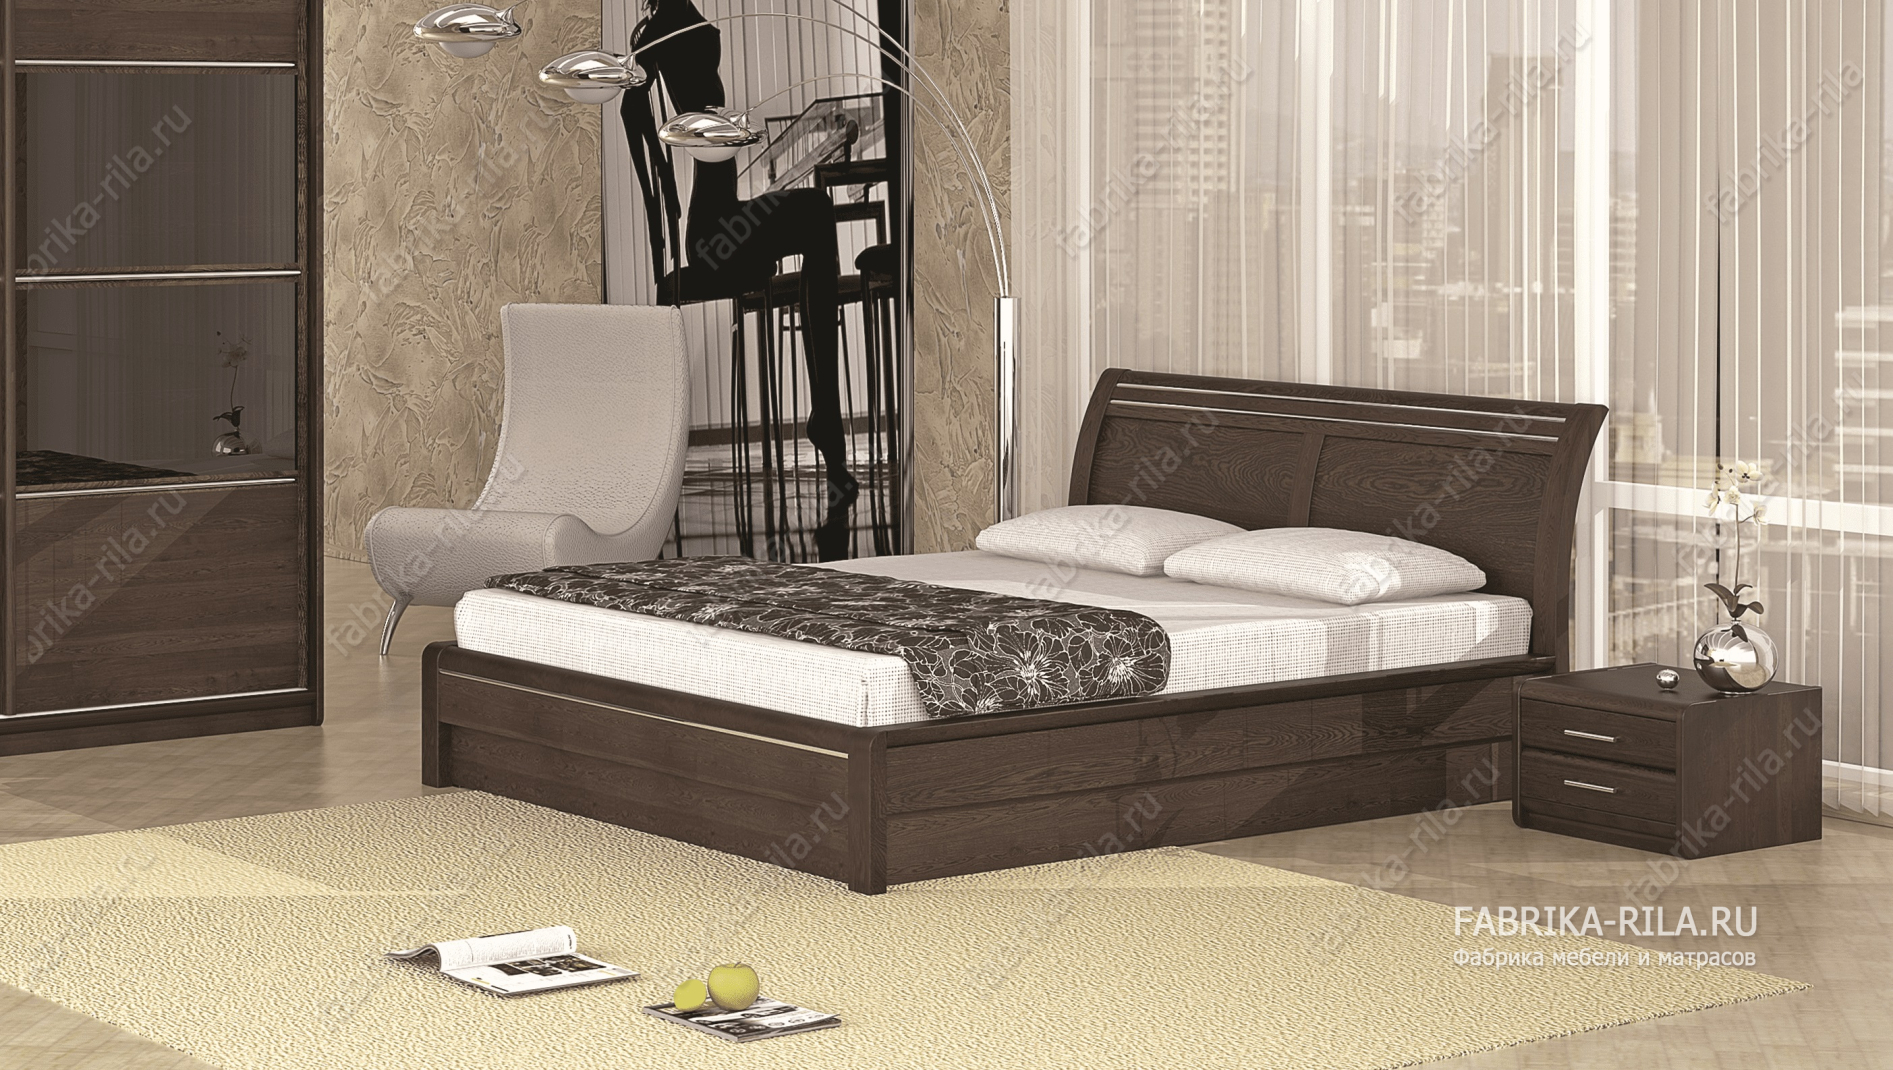 Кровать Okaeri 2 — 140x200 см. из сосны